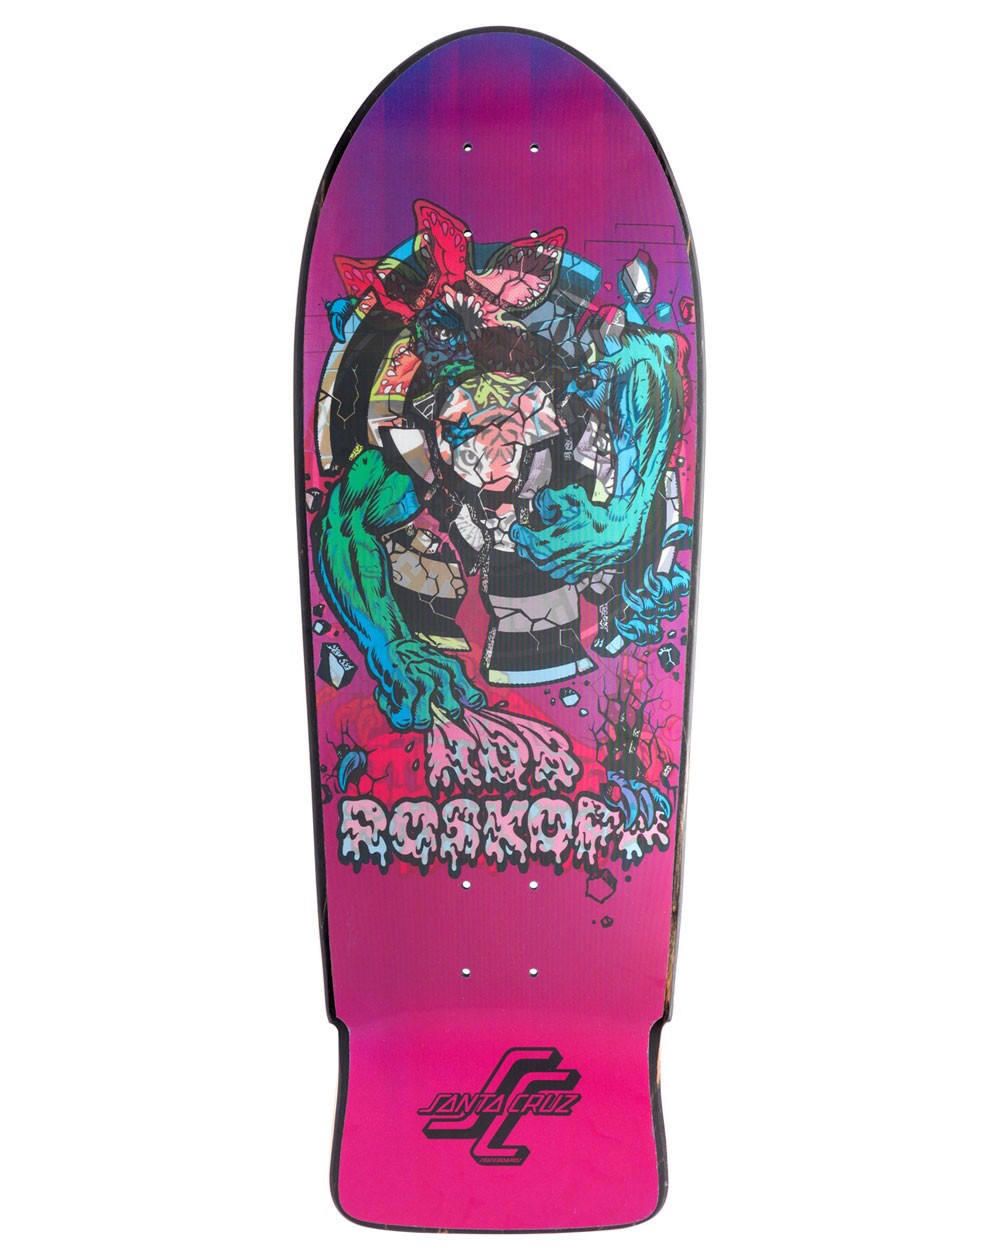 10.25in x 30.03in Stranger Things Roskopp Demogorgon Santa Cruz Skateboard Deck